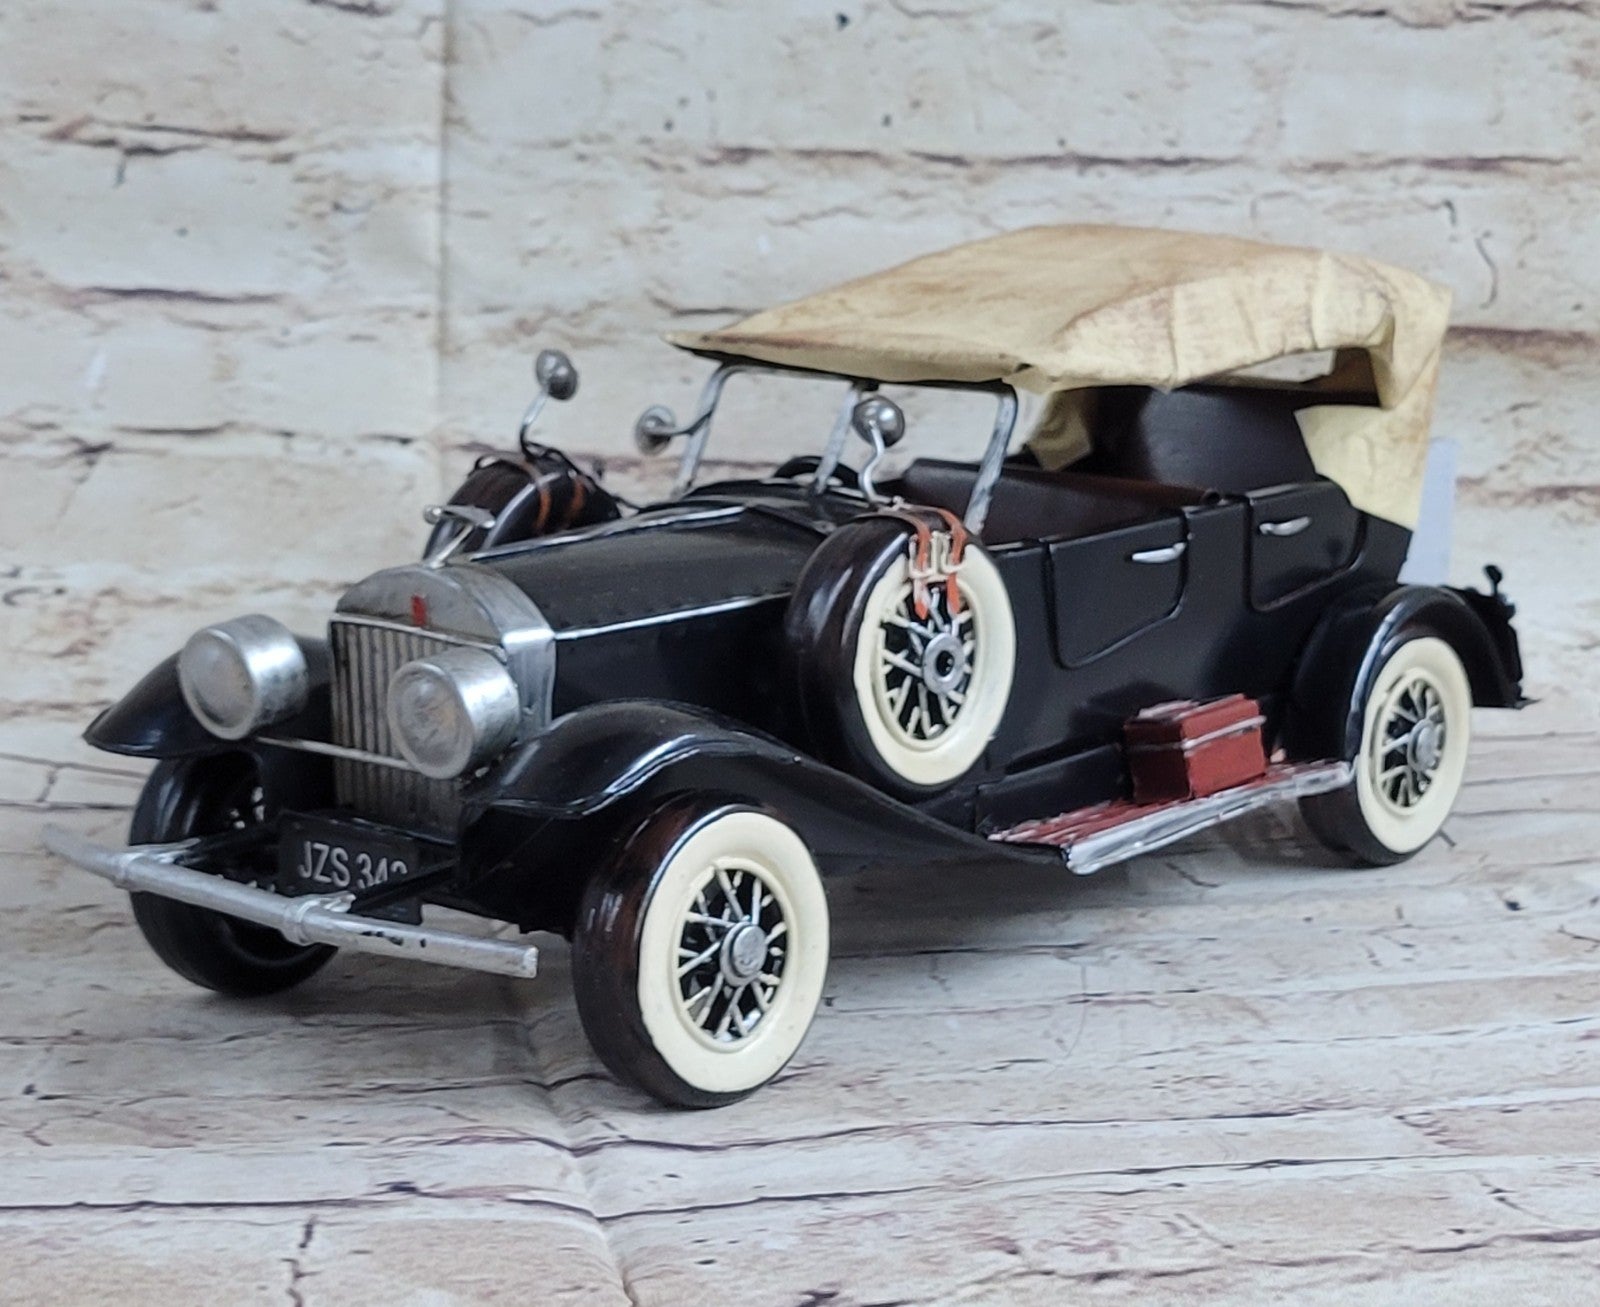 Antique Model Car, Metal Craft, Handmade Artwork,Vintage Home Decoration,Figure